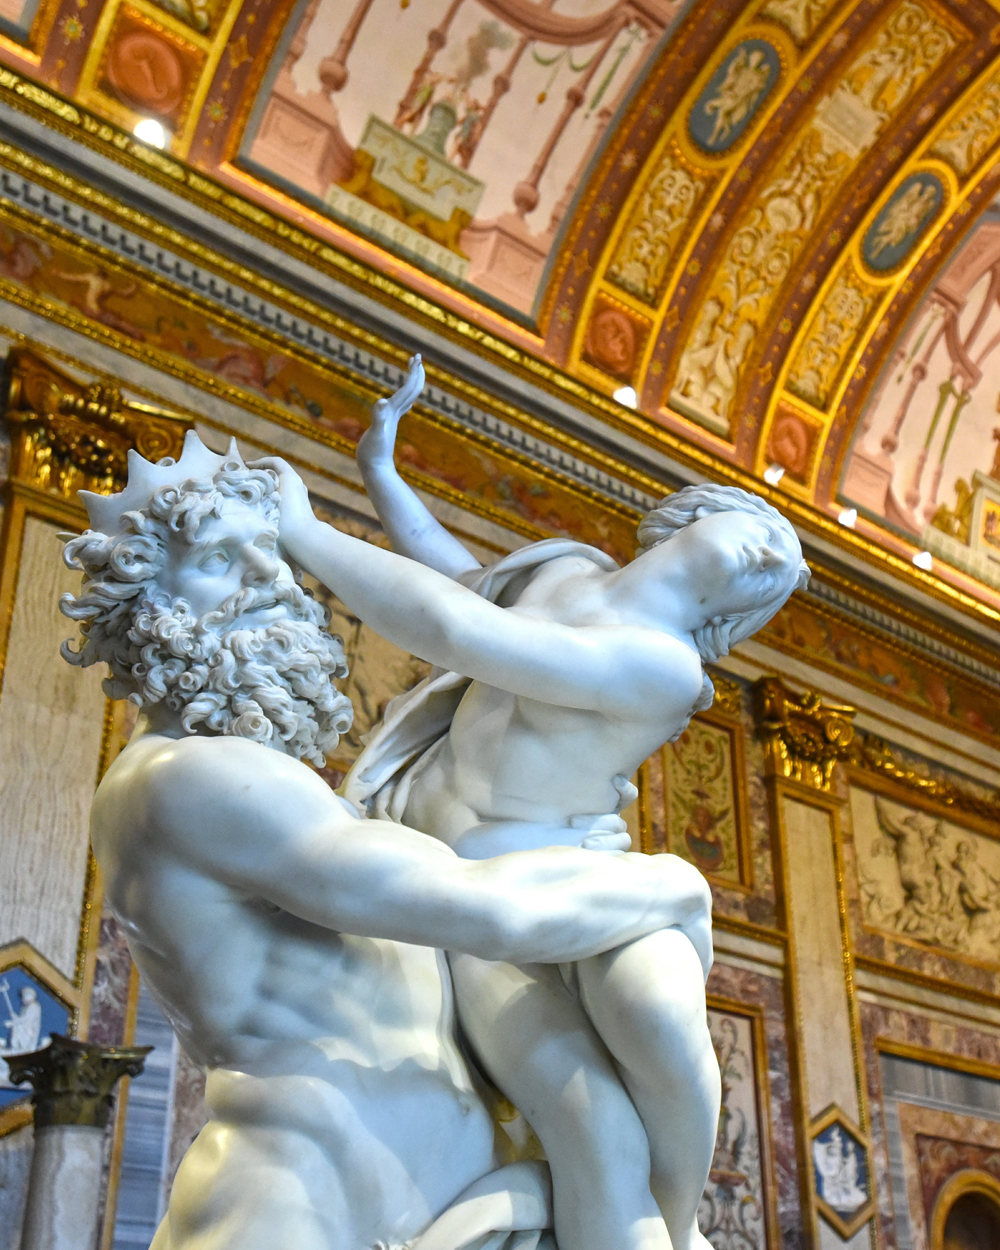 Galeria Borghese - O que ver e fazer em  Roma